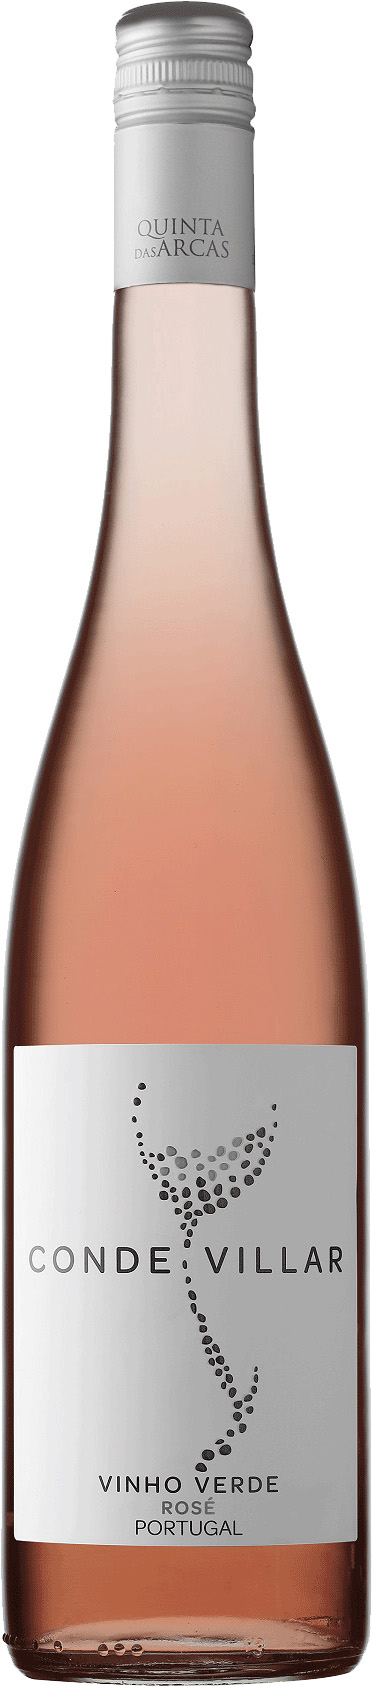 Quinta das Arcas - Conde Villar Vinho Verde - rosé | Solo-Vino | Die besten  Weine | Wein online bestellen | Weißweine